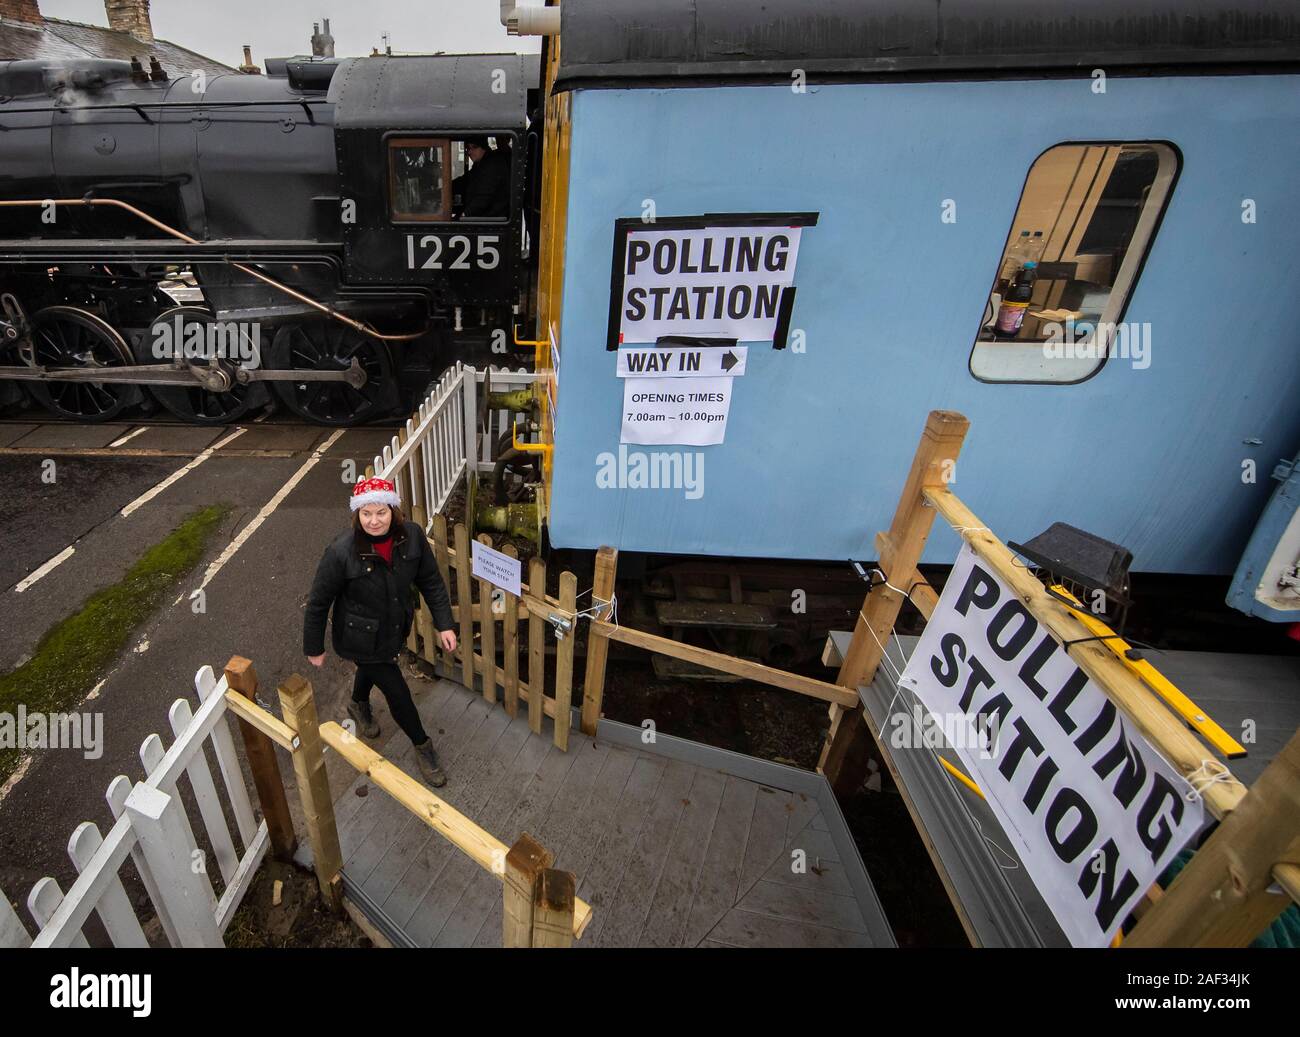 Wensleydale empleado ferroviario Teresa Chapman es retratada con el Polar Express junto a una estación de votación en un vagón de ferrocarril en Leeming Bar, North Yorkshire, como votantes acudan a las urnas en lo que ha sido catalogado como el más importante elección general en una generación. Foto de stock